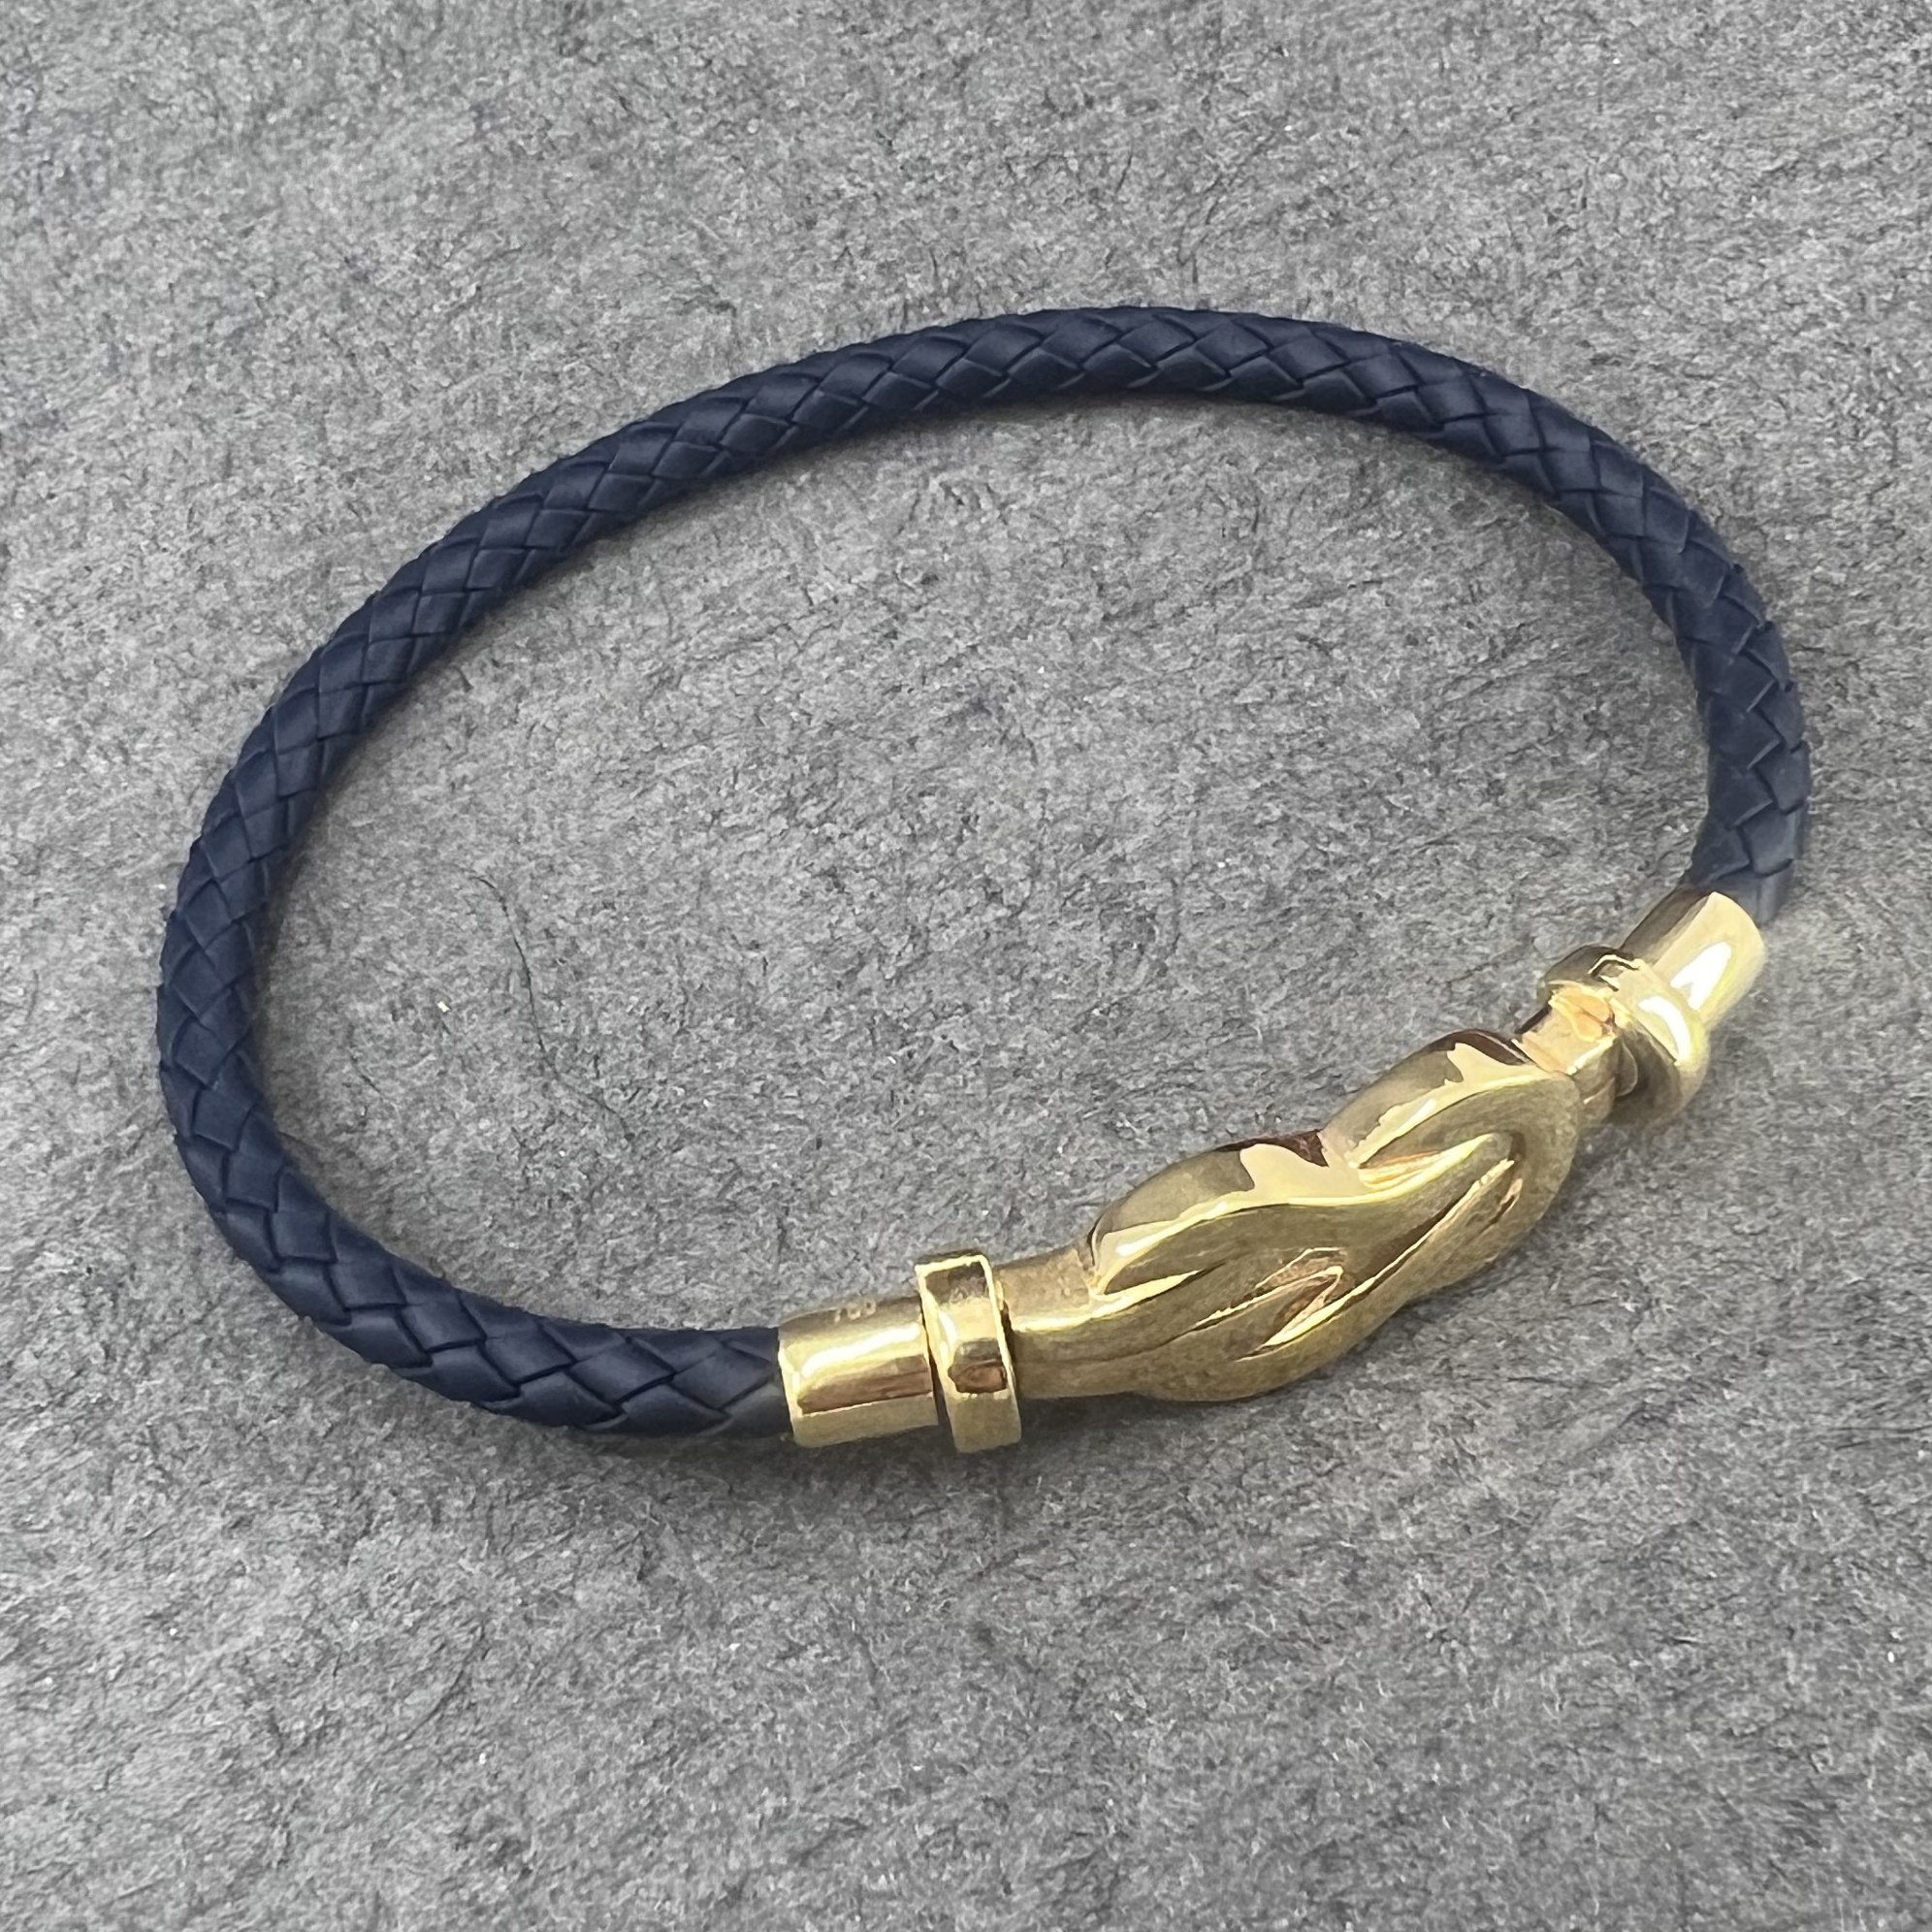 دستبند طلا 18 عیار زنانه دوست خوب مدل dk151 -  - 5